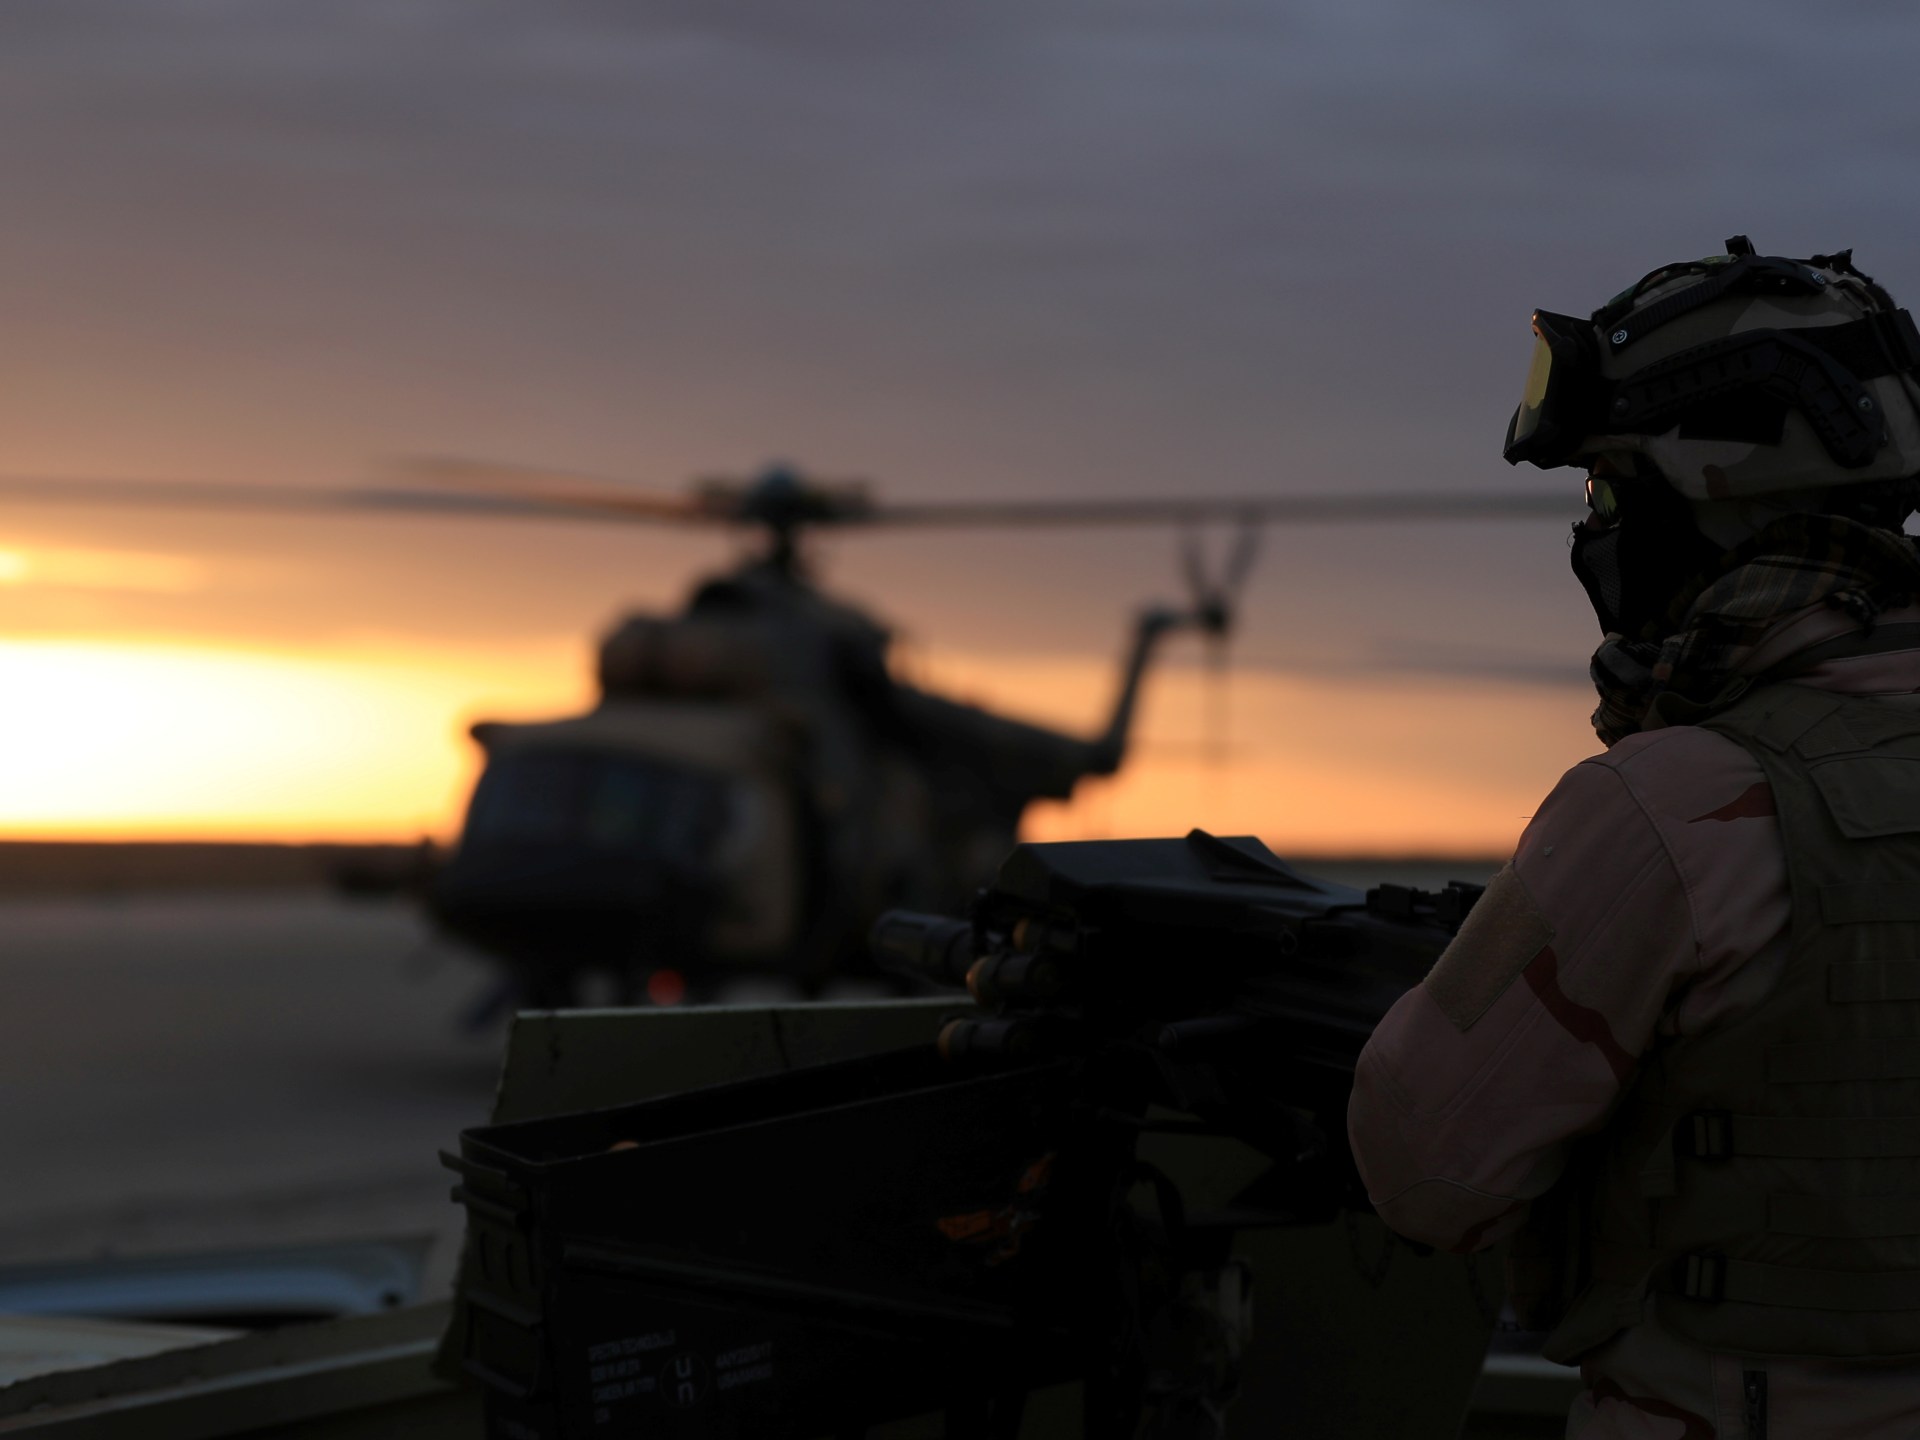 هجوم جديد بمسيّرة على قاعدة تضم قوات أميركية في العراق